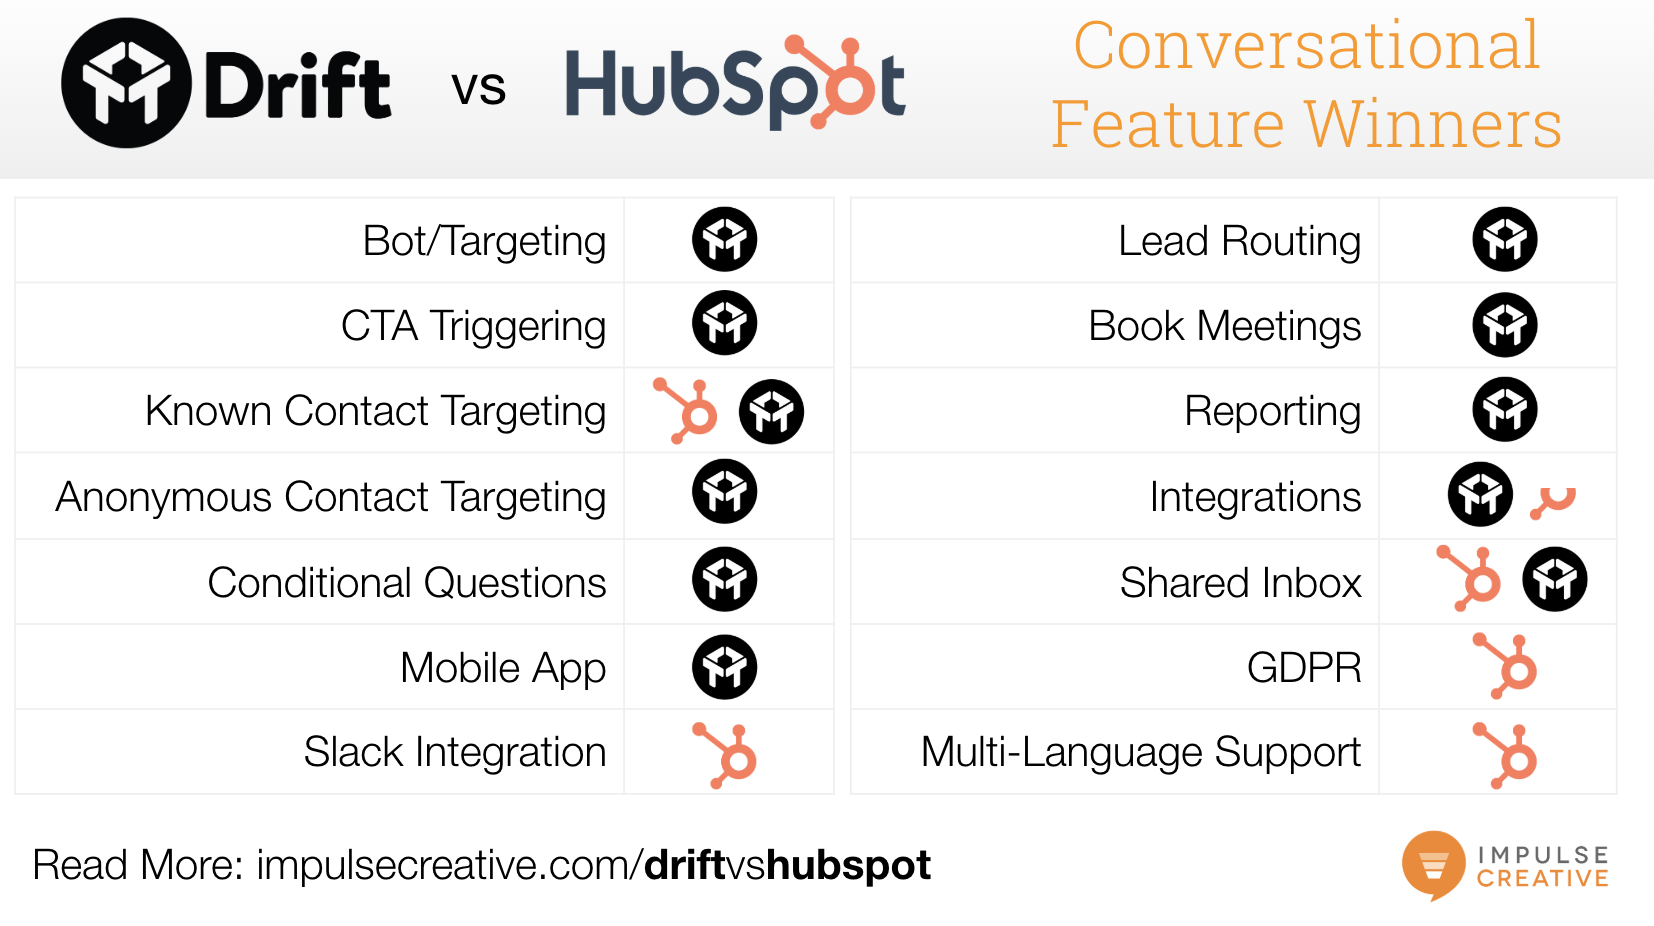 Drift vs HubSpot Conversations Conversational Feature Scorecard